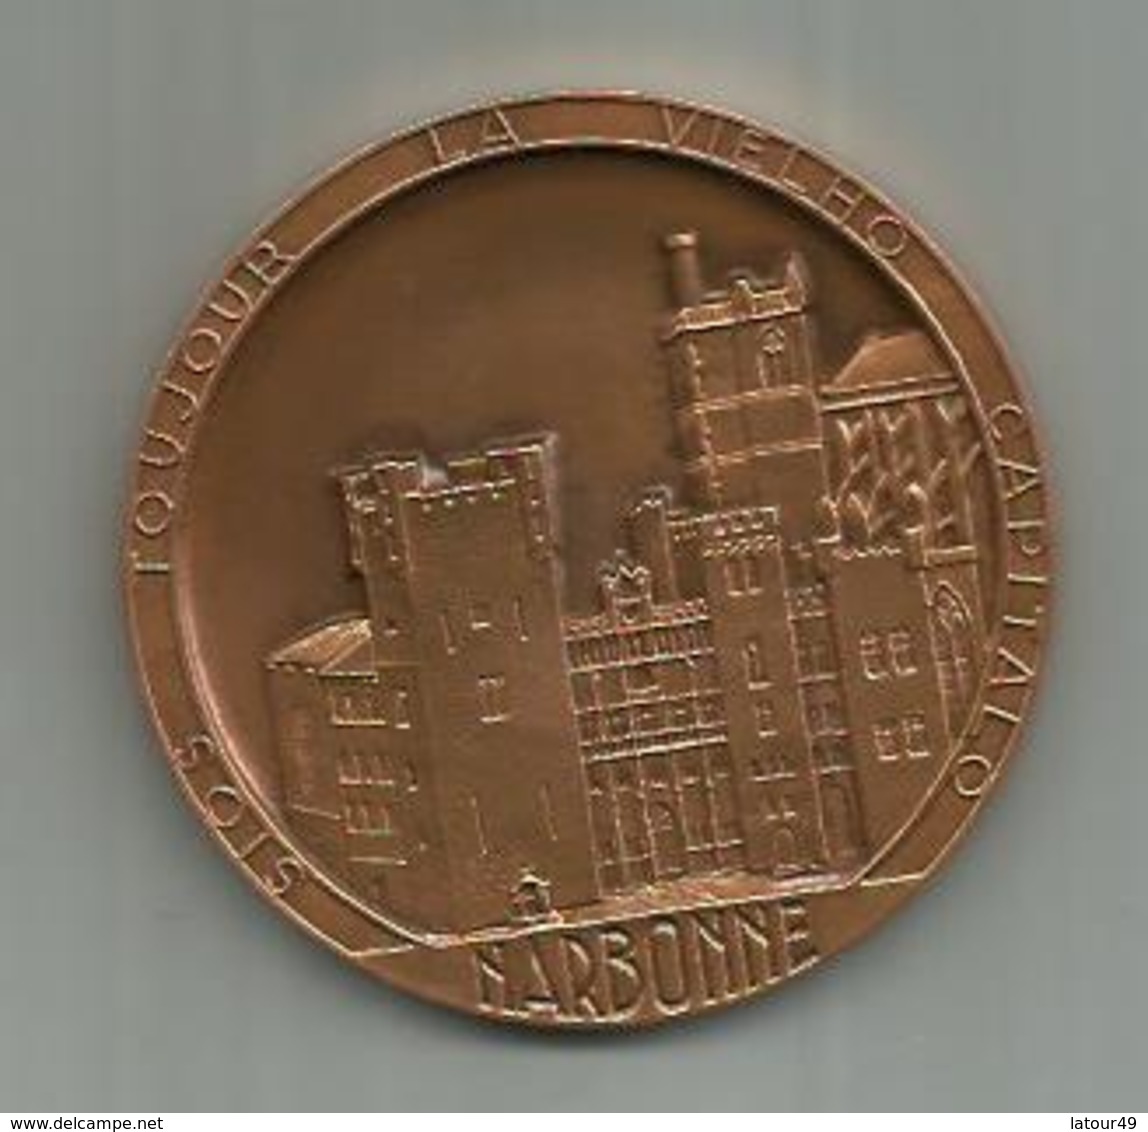 Medaille Narbonne  SIOS TOUJOUR LA VIELHO  CAPITALO   ..6.8 CM ET BOITE D ORIGINE ETAT NEUF - France